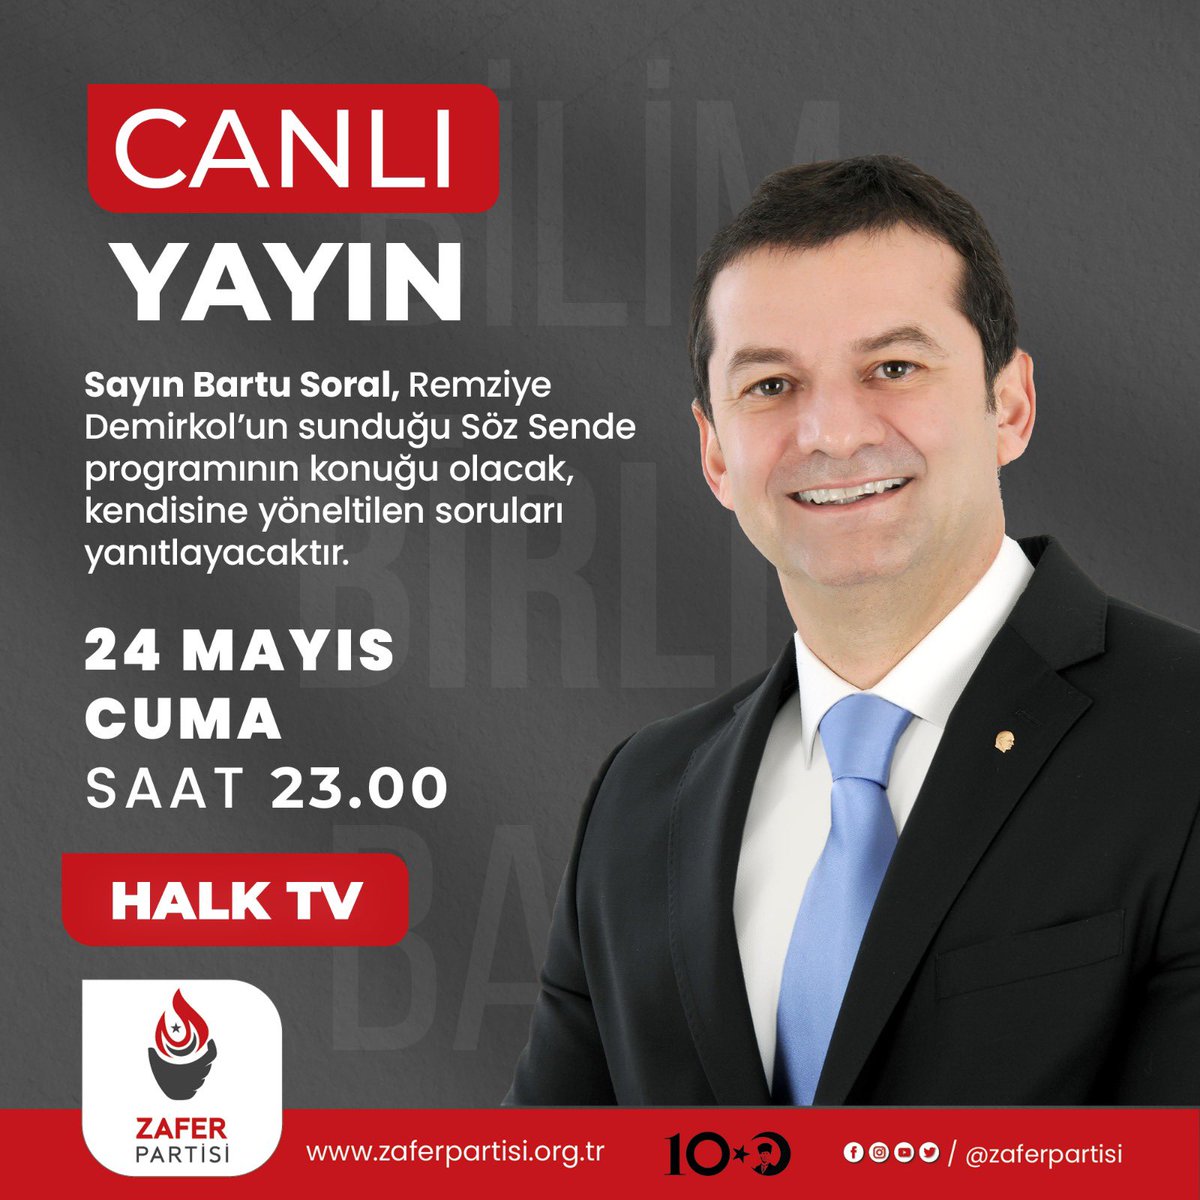 Sayın Bartu Soral, bu akşam (24 Mayıs Cuma) saat 23.00'te Halk TV'de Remziye Demirkol'un sunduğu Söz Sende programına konuk olacaktır. 📅 24 Mayıs Cuma 🕑 23.00 📺 Halk TV